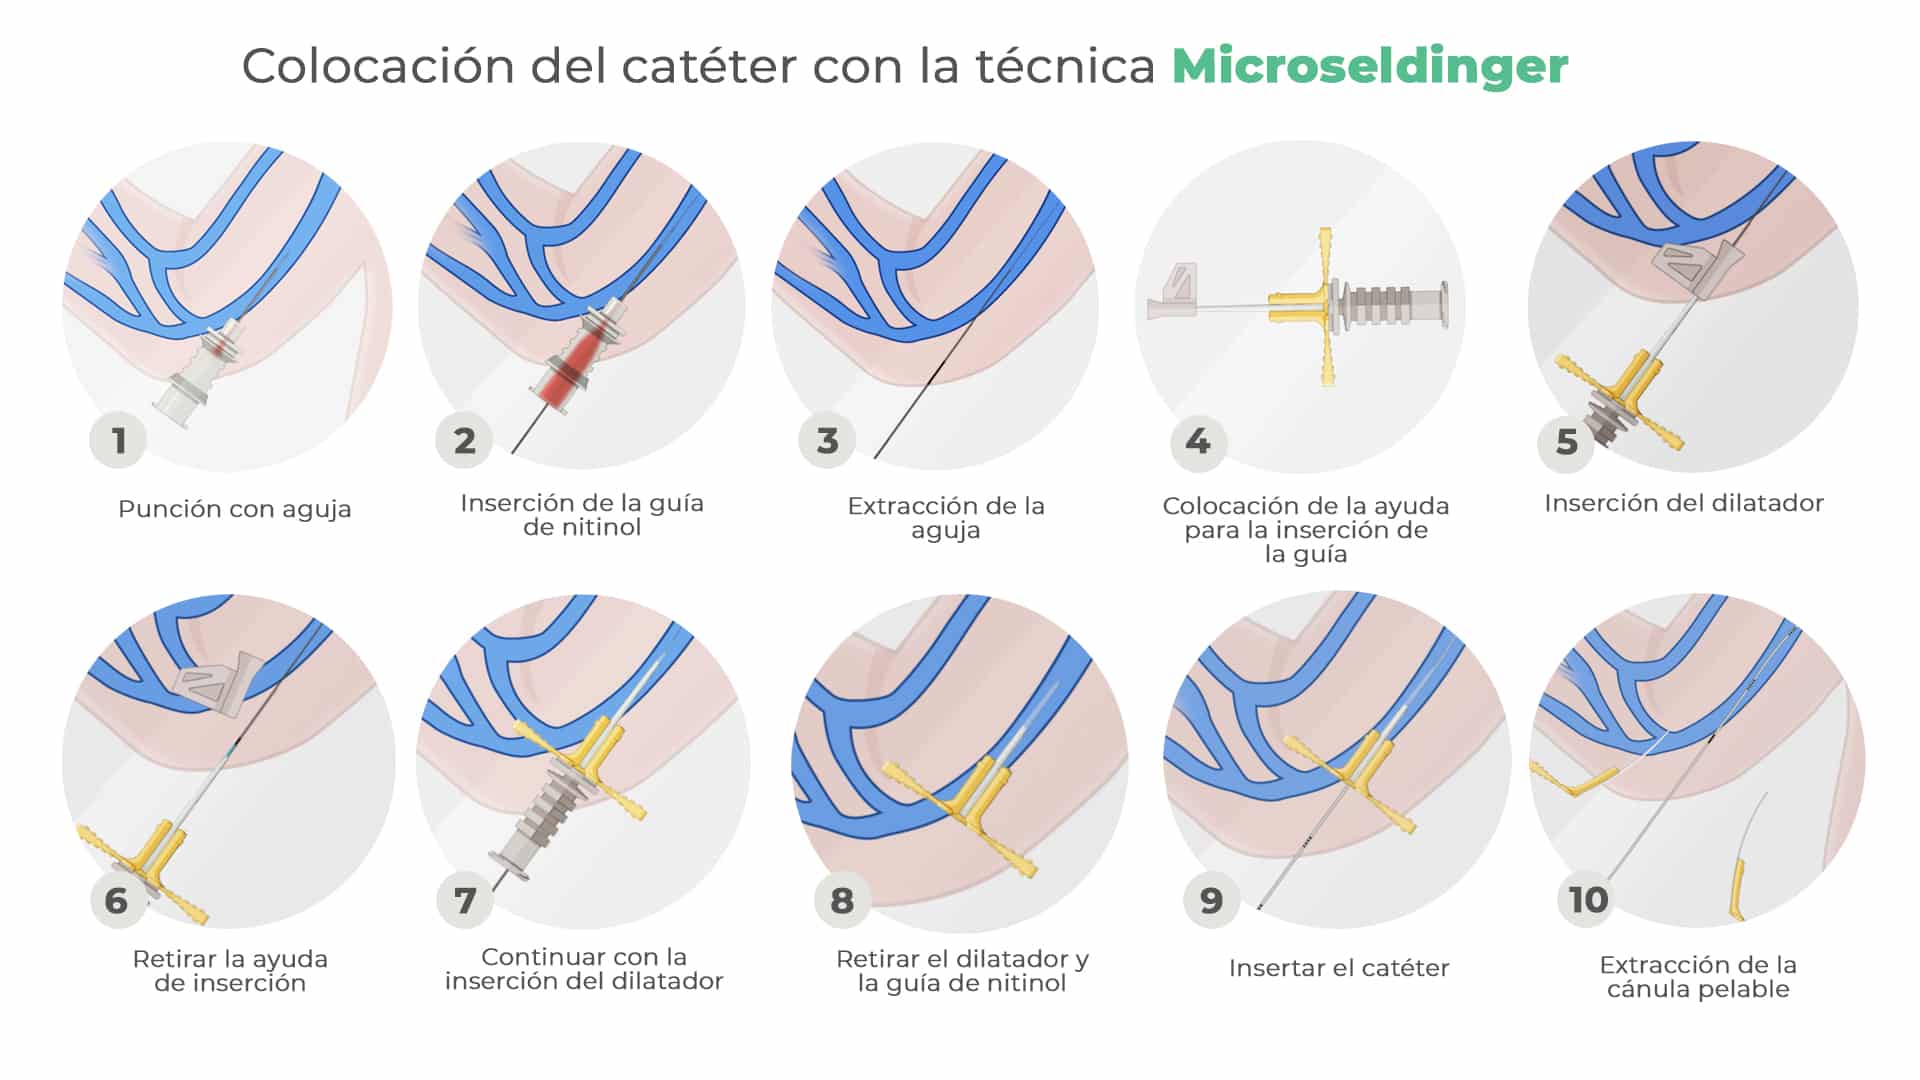 Colocación microseldinger